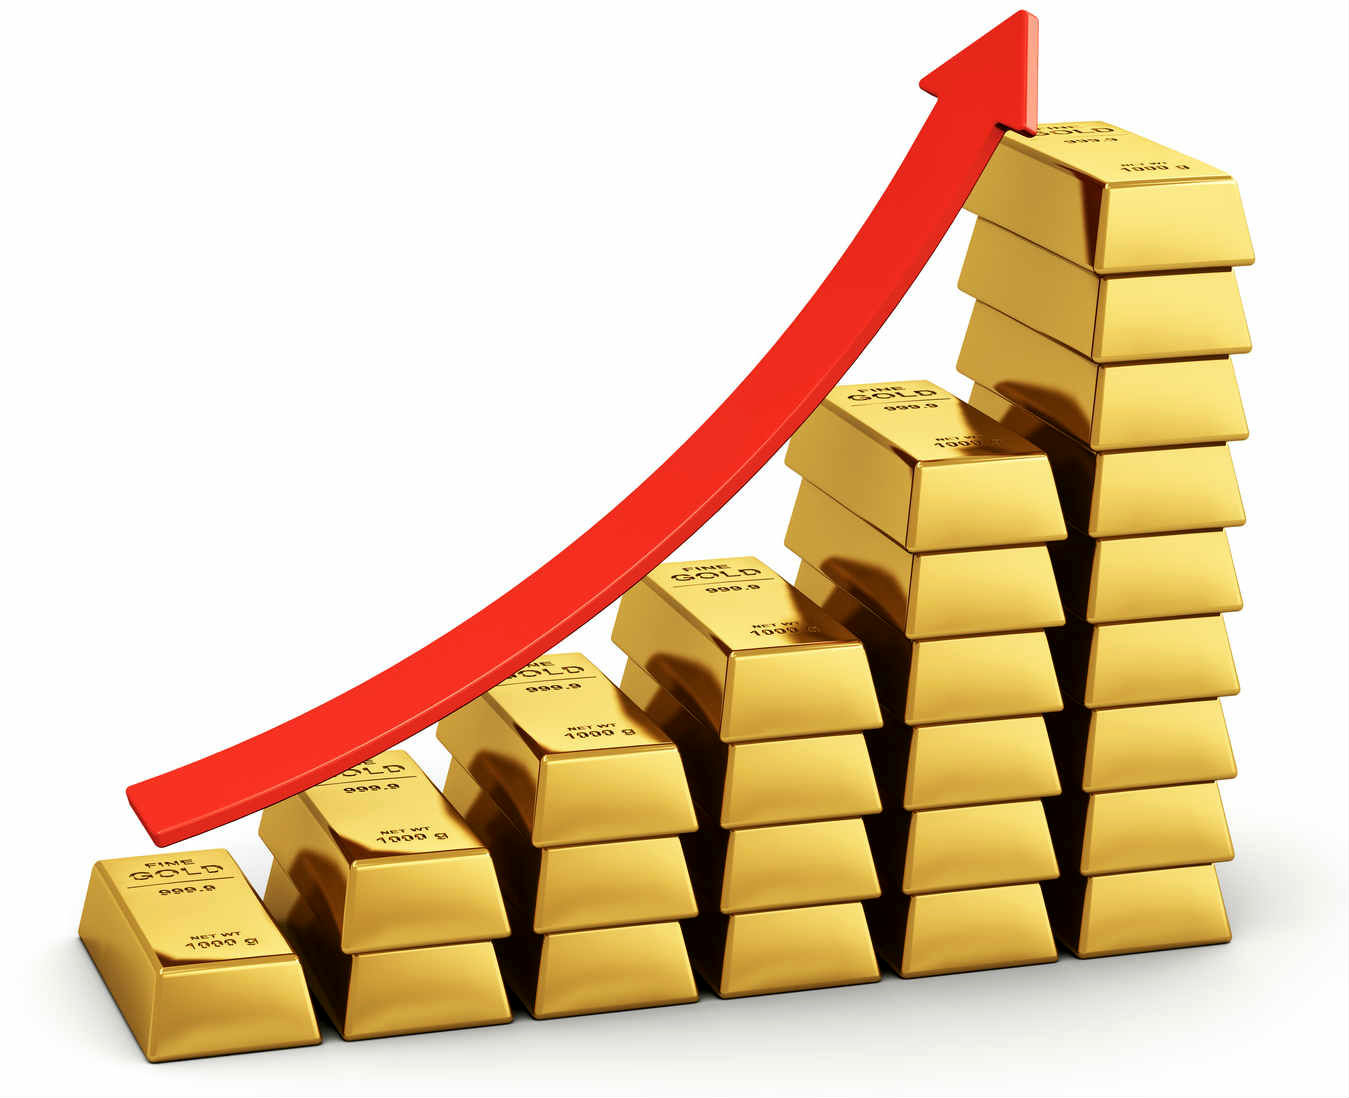 پیش بینی قیمت طلا/ روند افزایش قیمت طلا کند و ادامه دار می شود